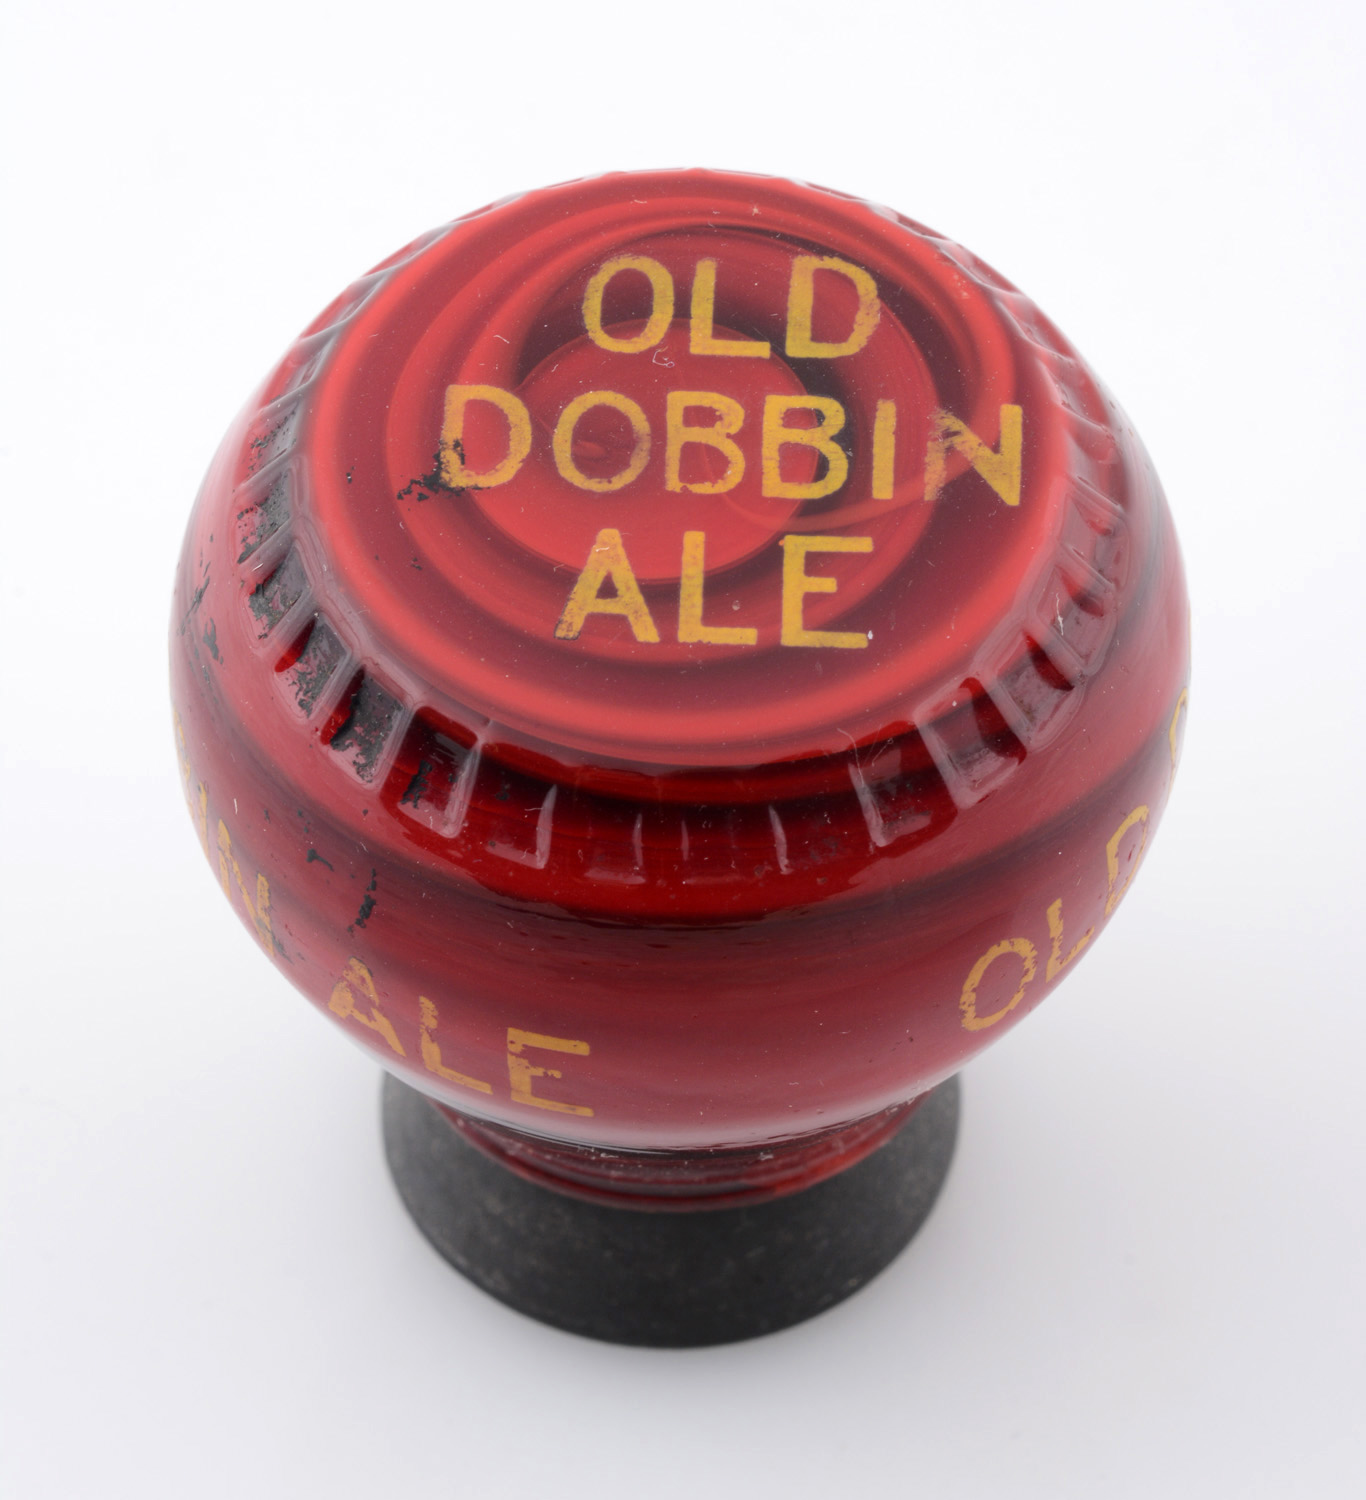 Old Dobbin Ale Newman Tap Knob, estimated at $500-800.